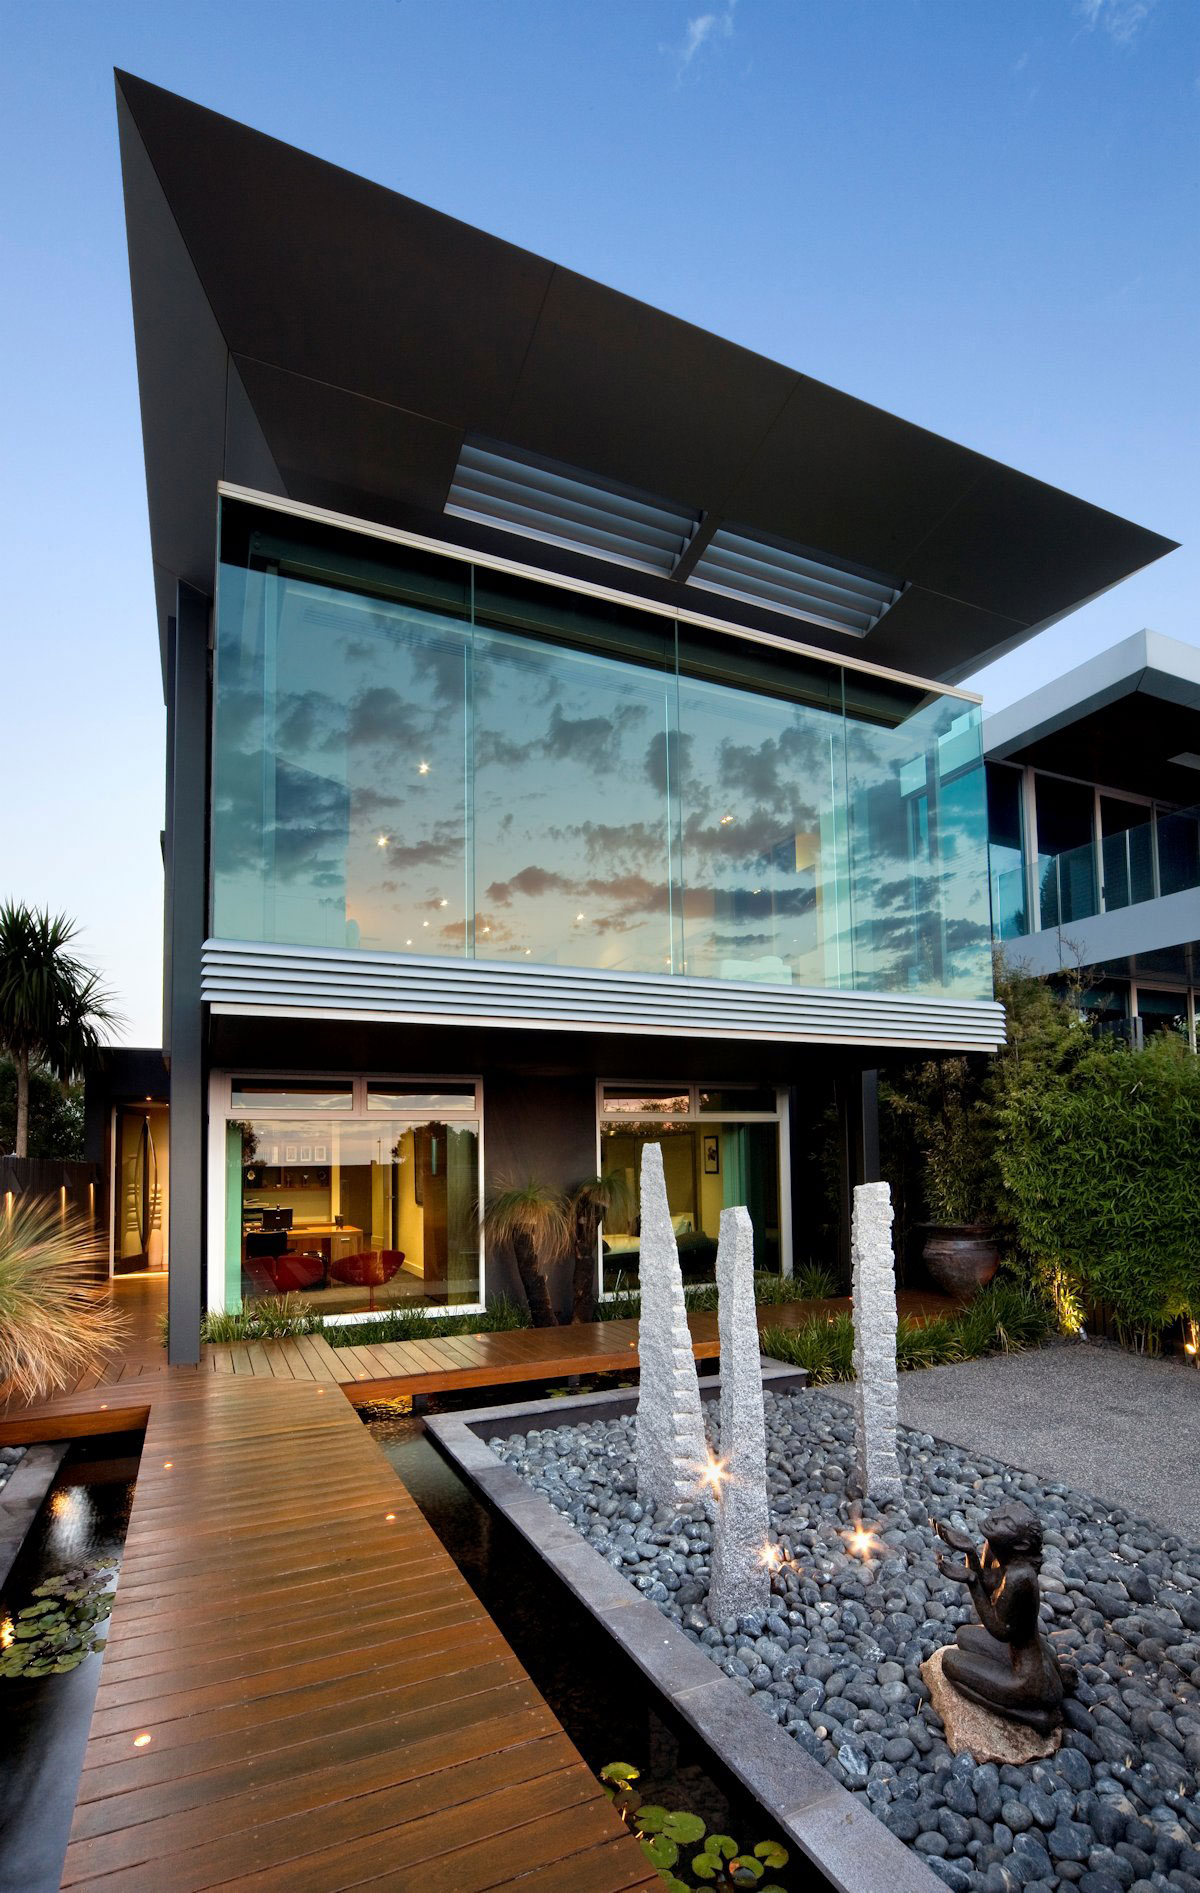 Esplanade-House-by-Finnis-Architects Australisk arkitektur och några vackra hus för att inspirera dig